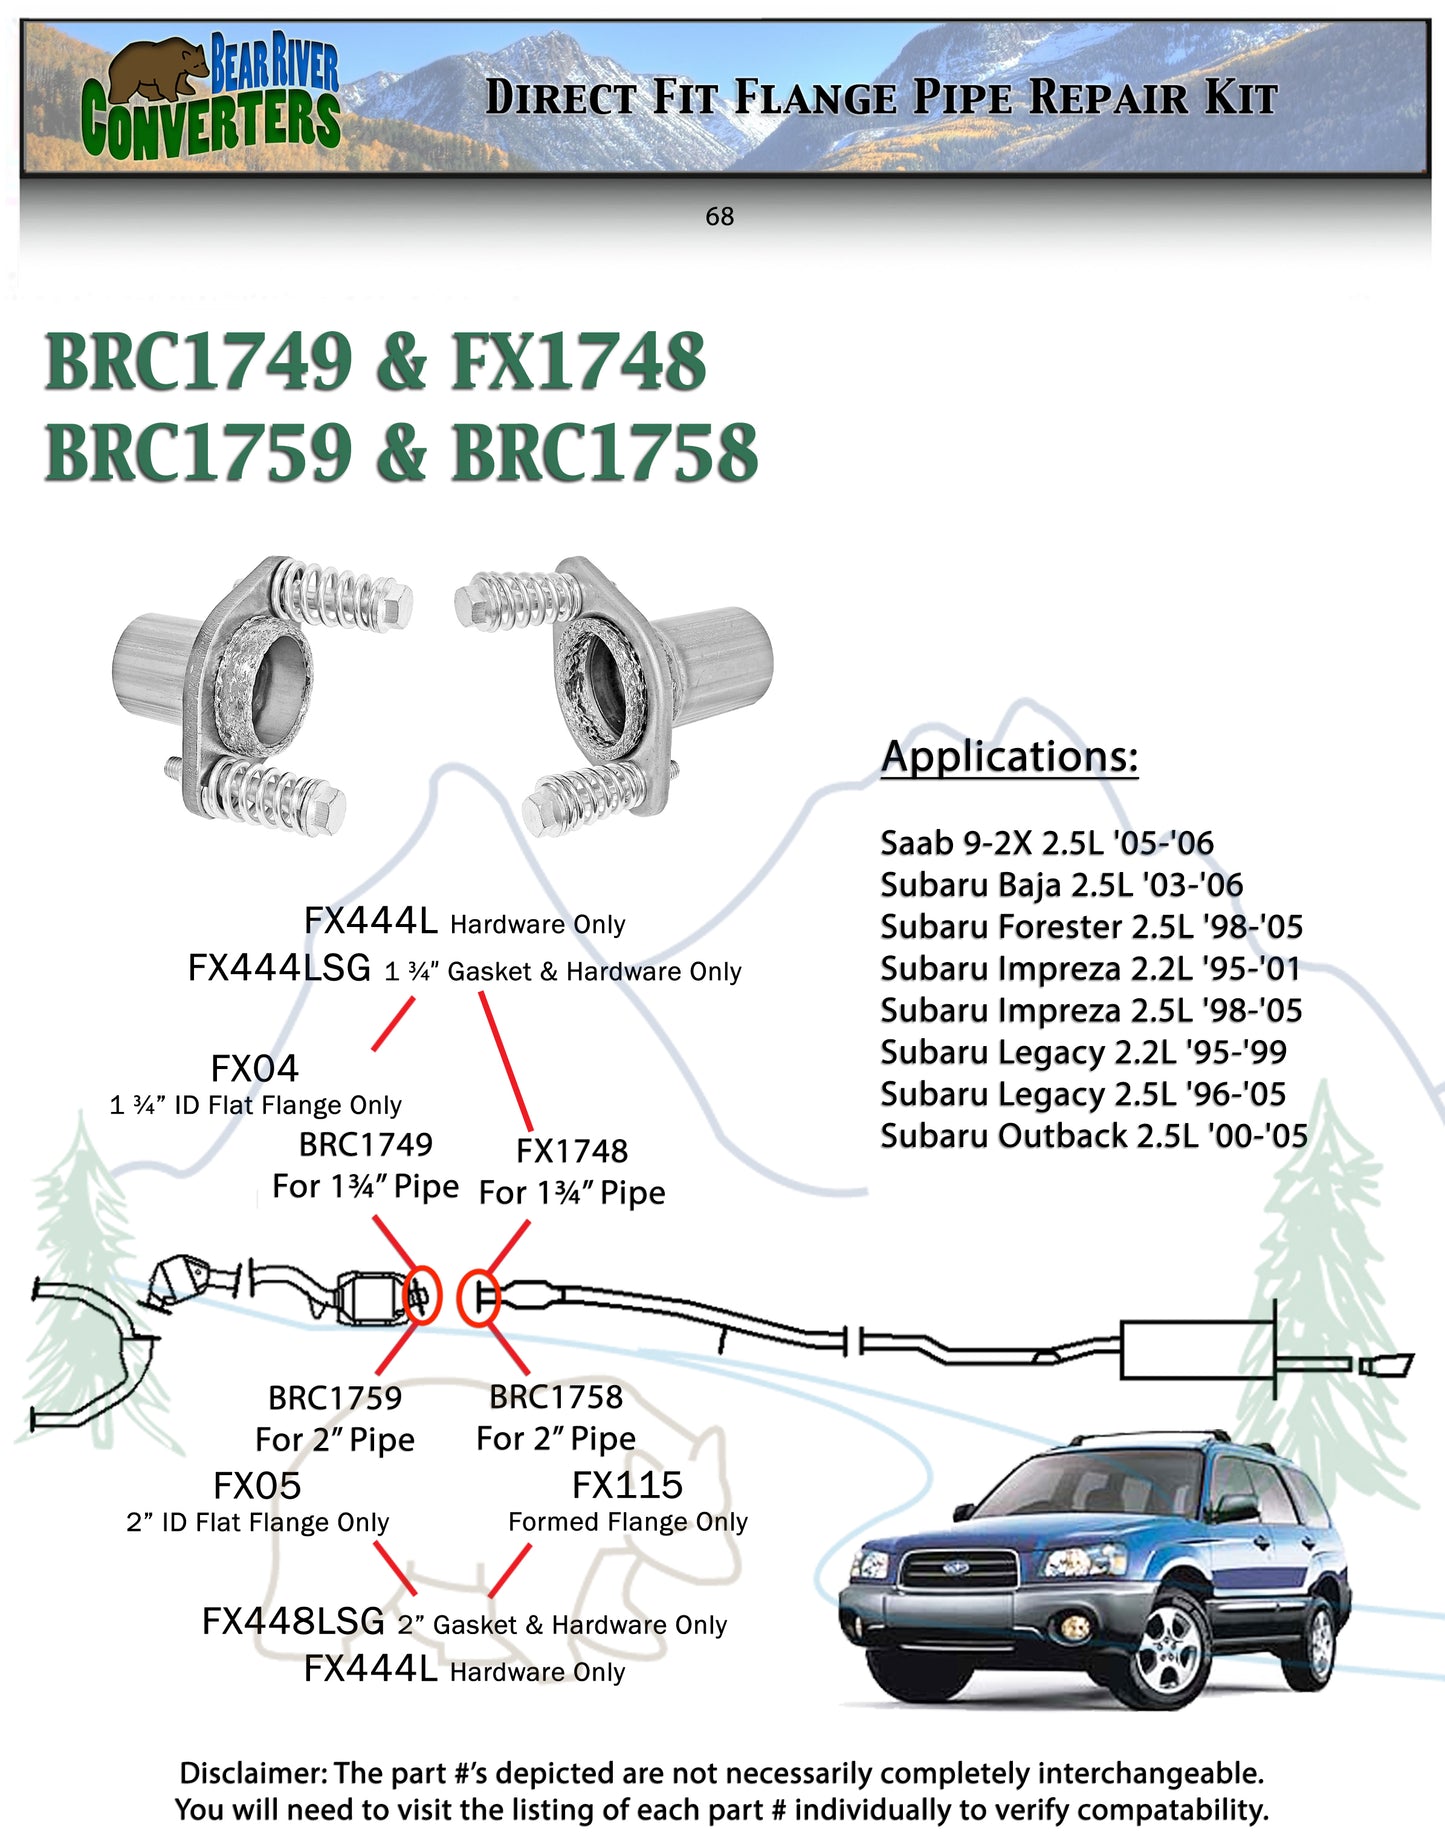 1 3/4" Semi Direct Fit Exhaust Converter Pipe Flange Repair Kit for Saab Subaru